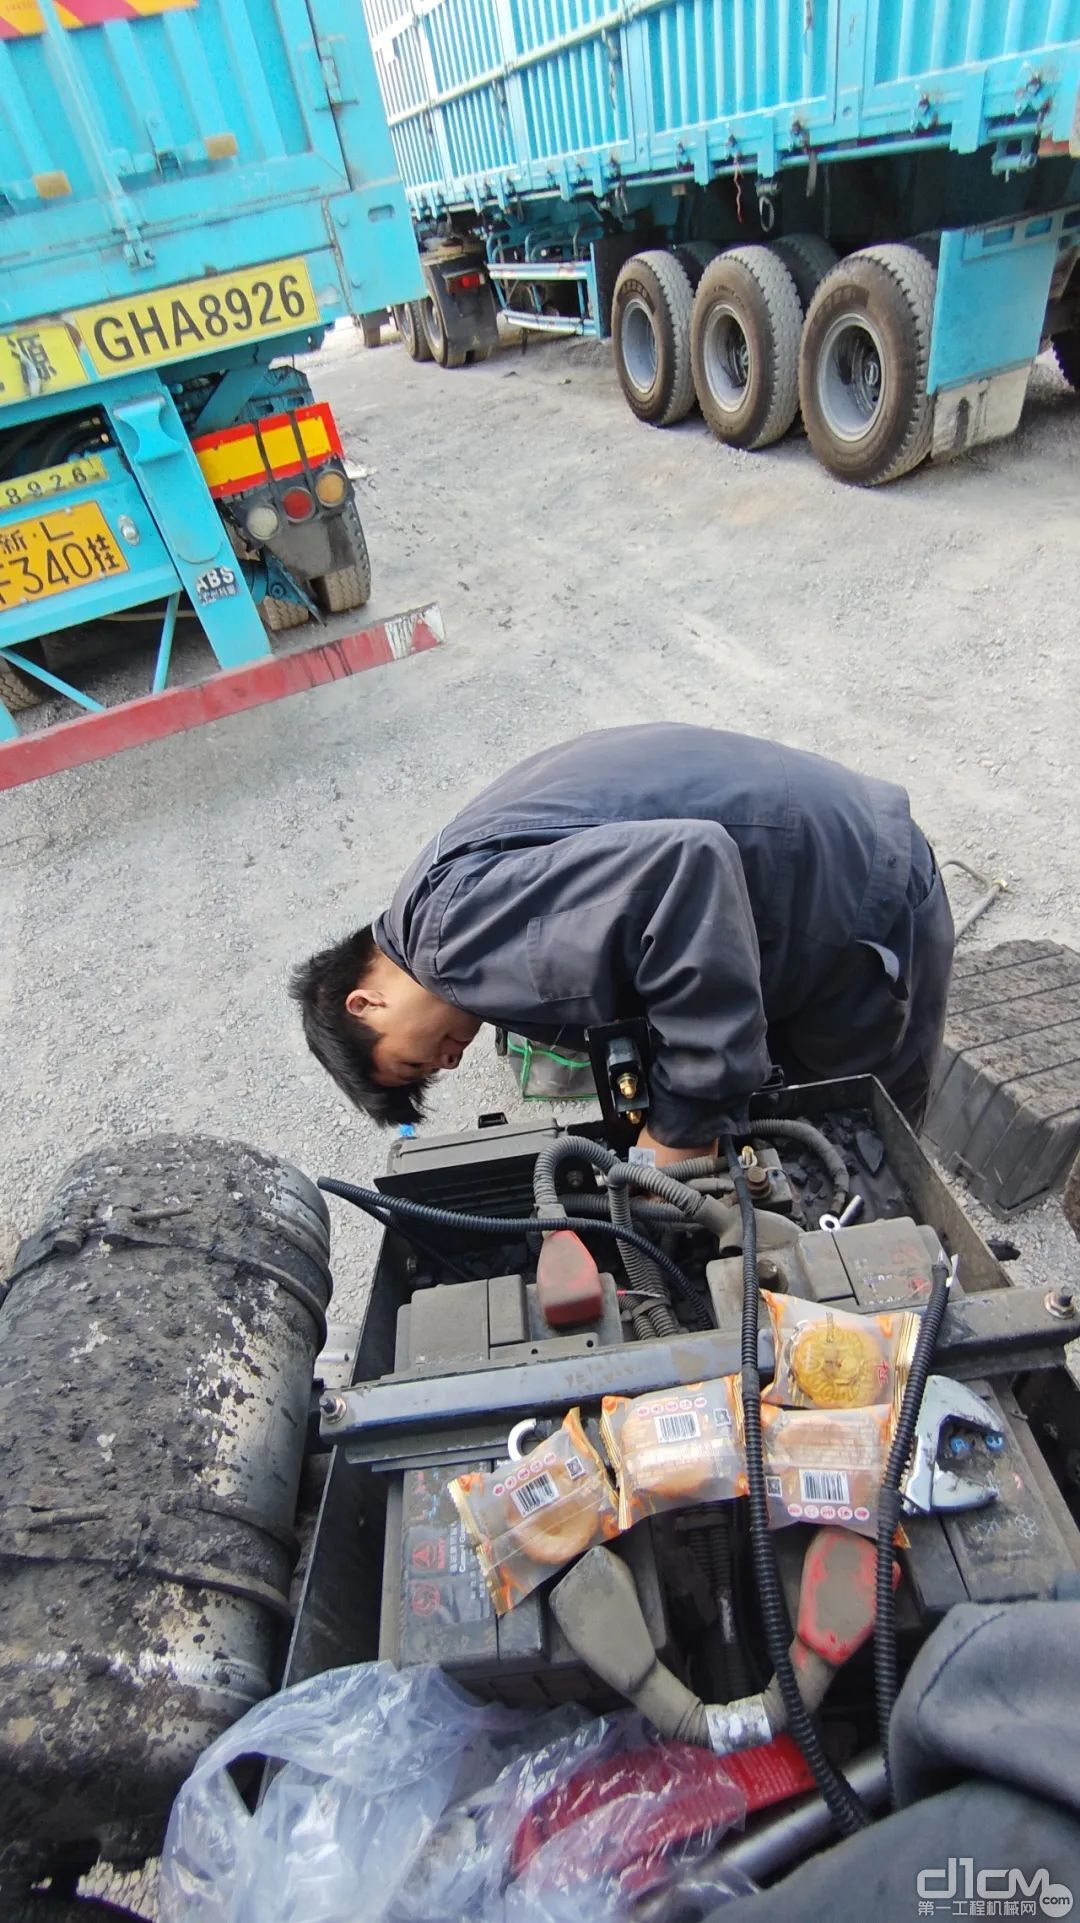 三一电动重卡服务工程师为客户修理车辆